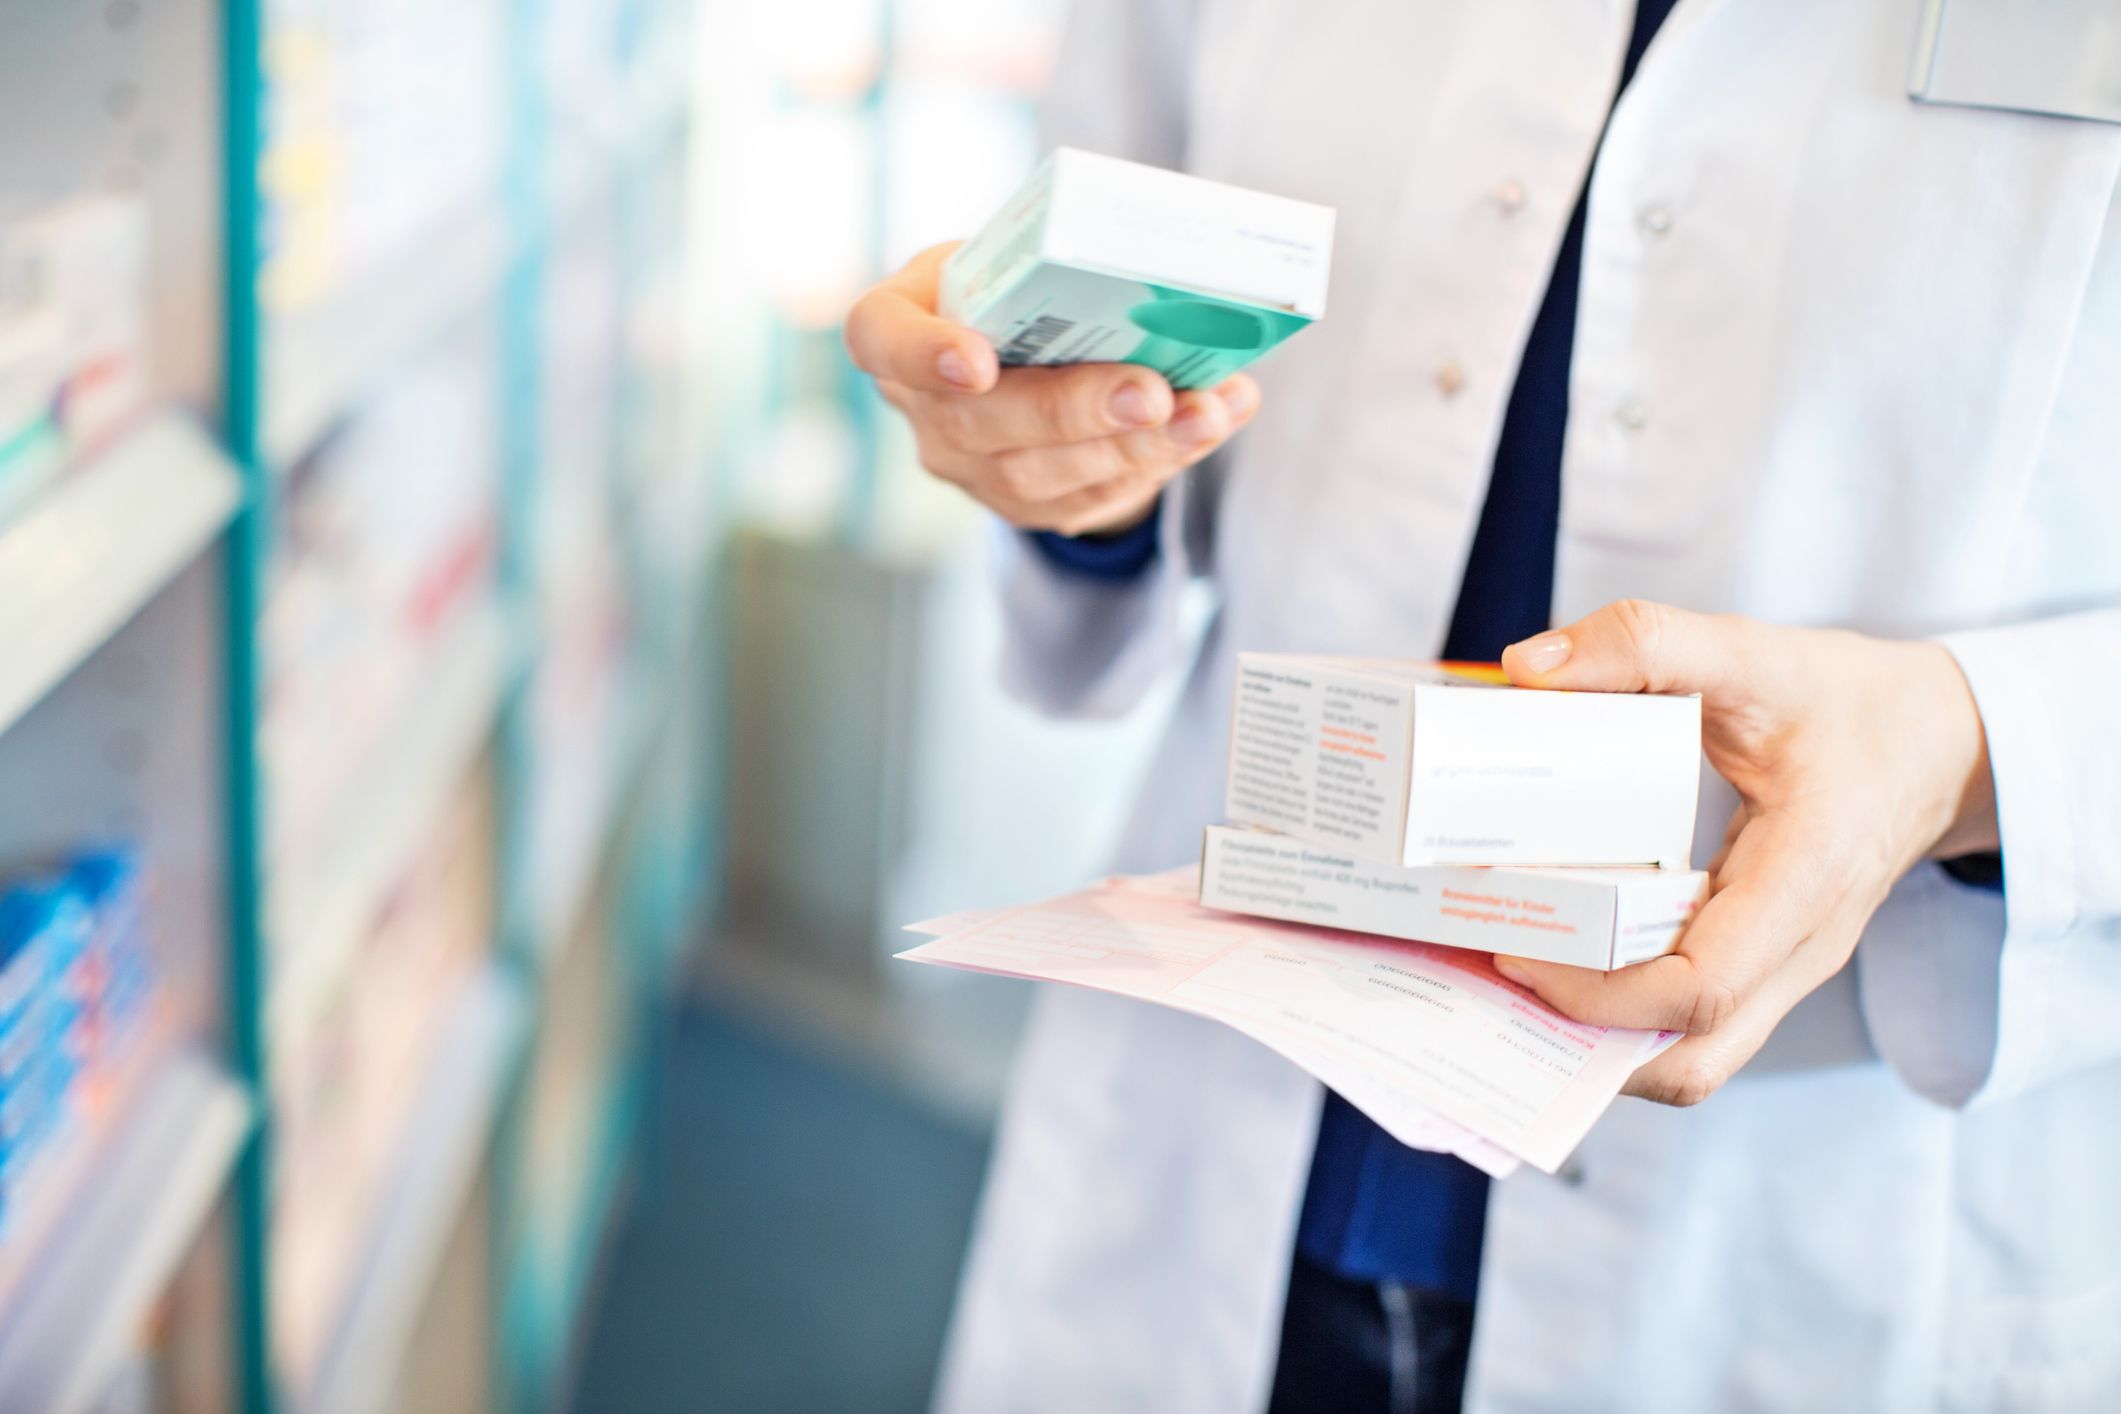 Ibuprofeno y paracetamol: por qué no podrás comprarlos sin receta médica